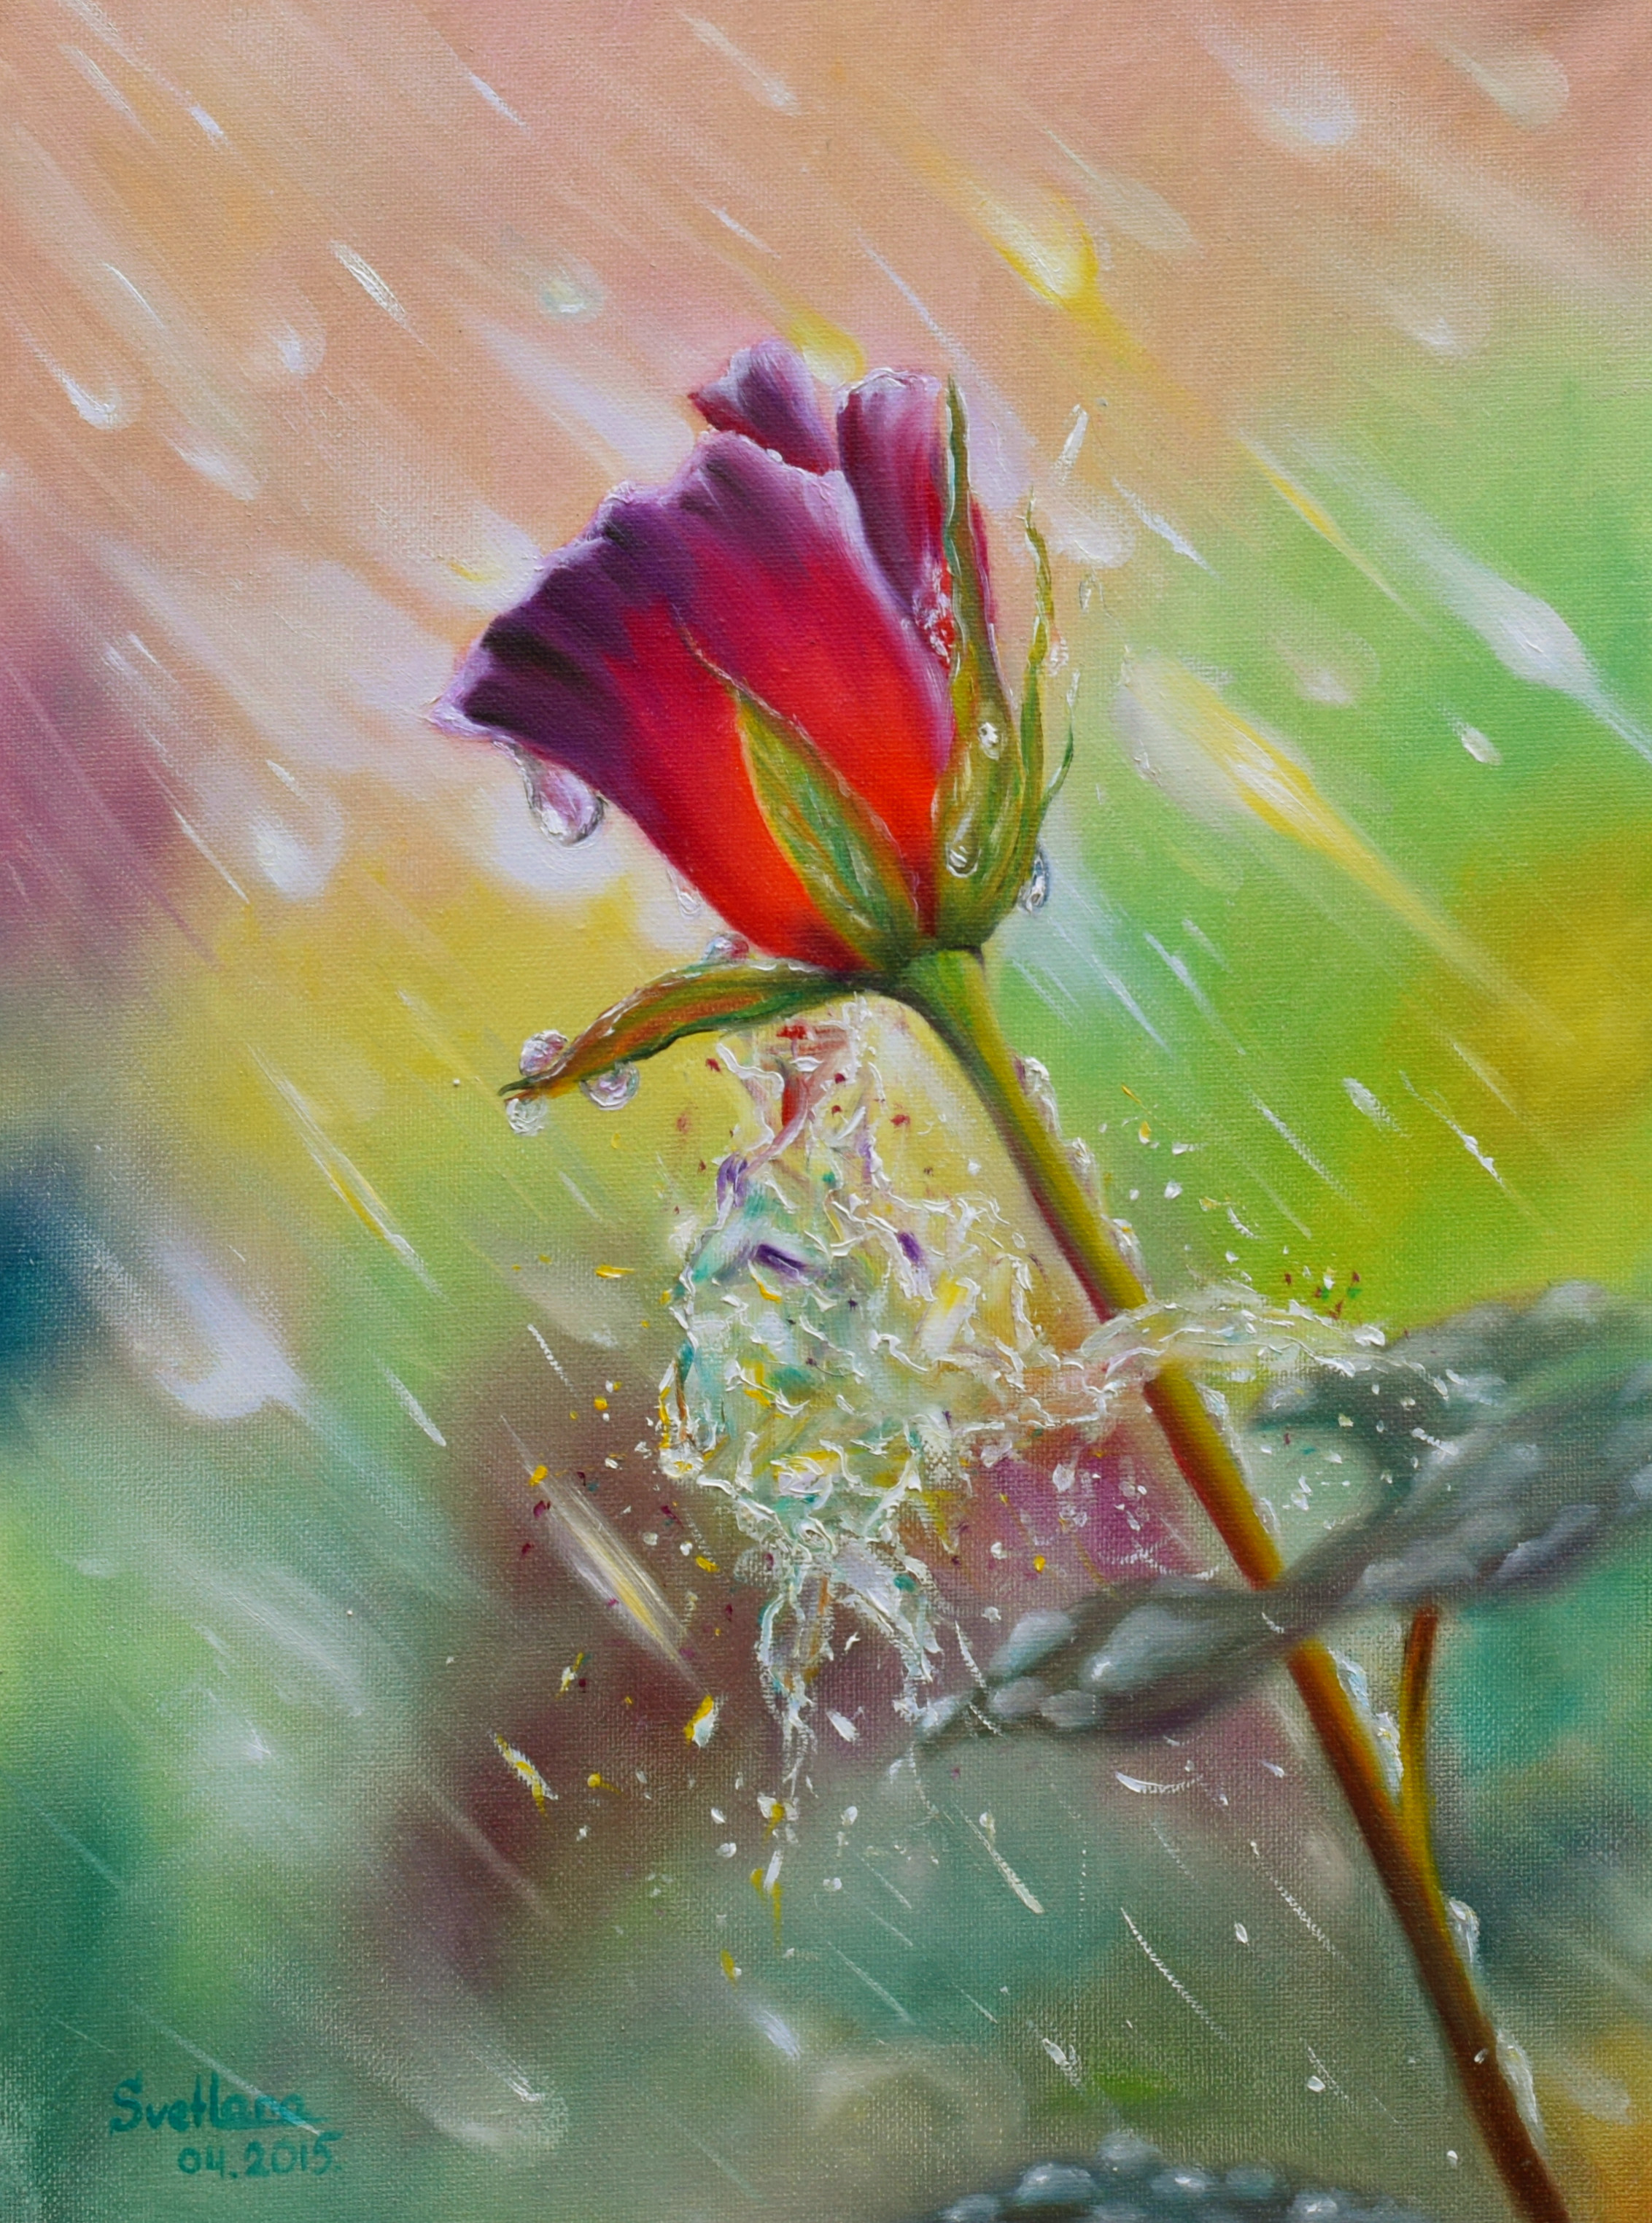 A rose in the rain